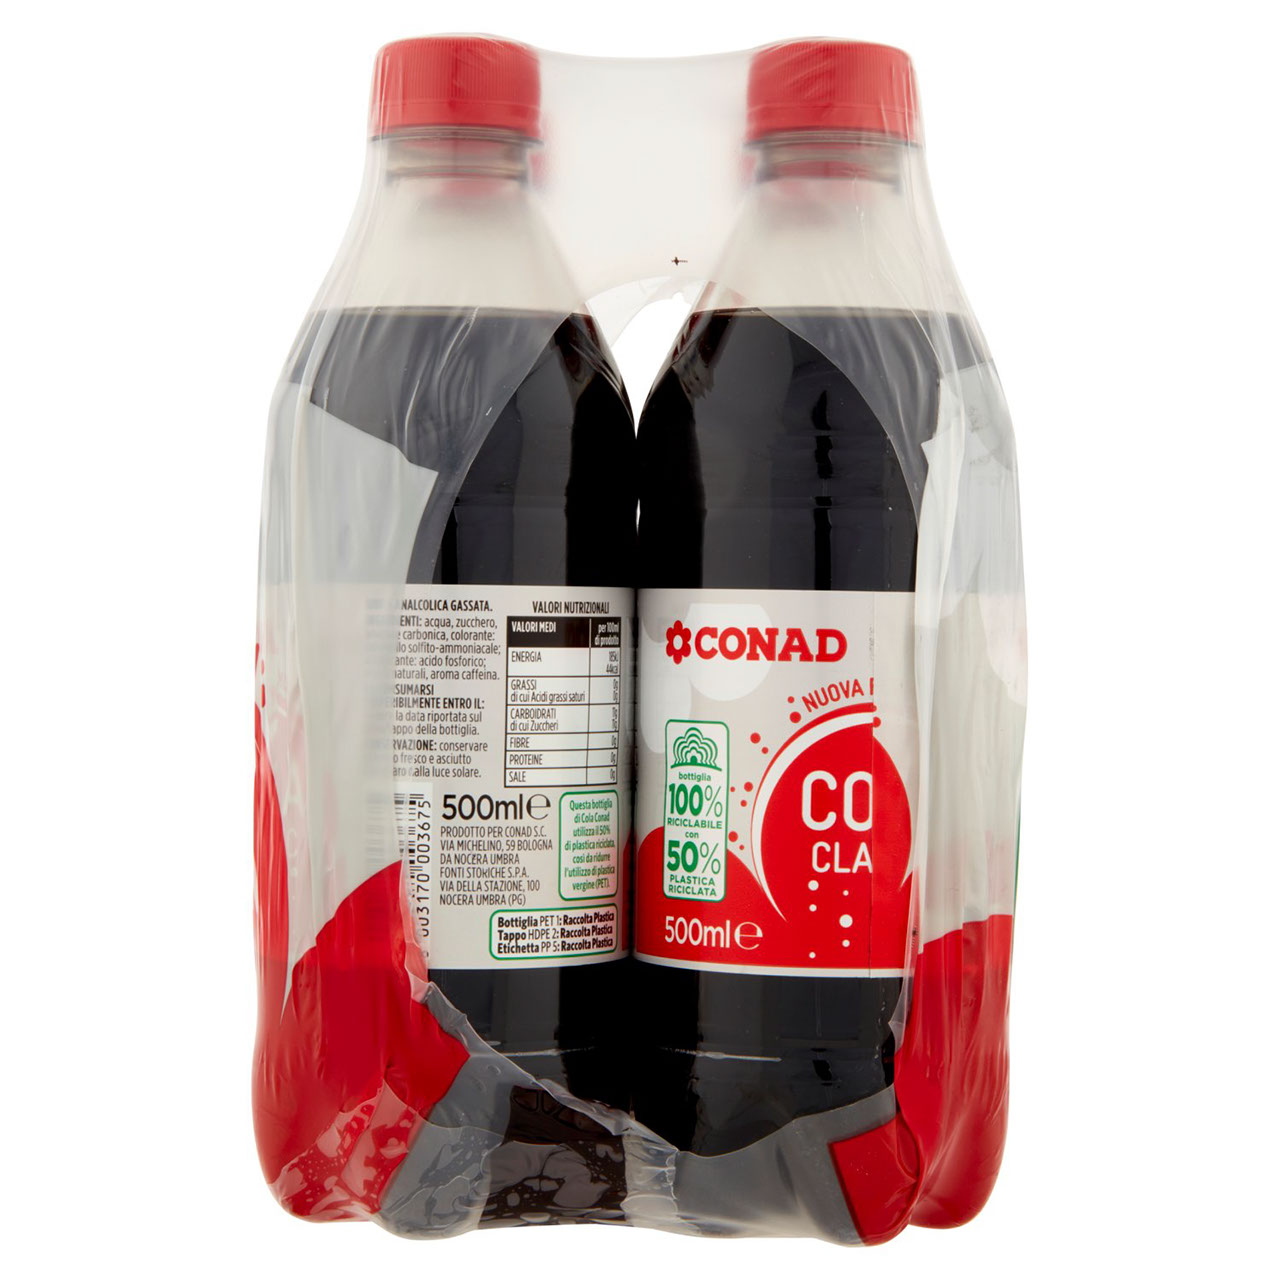 Cola Classic 4 x 500 ml Conad in vendita online